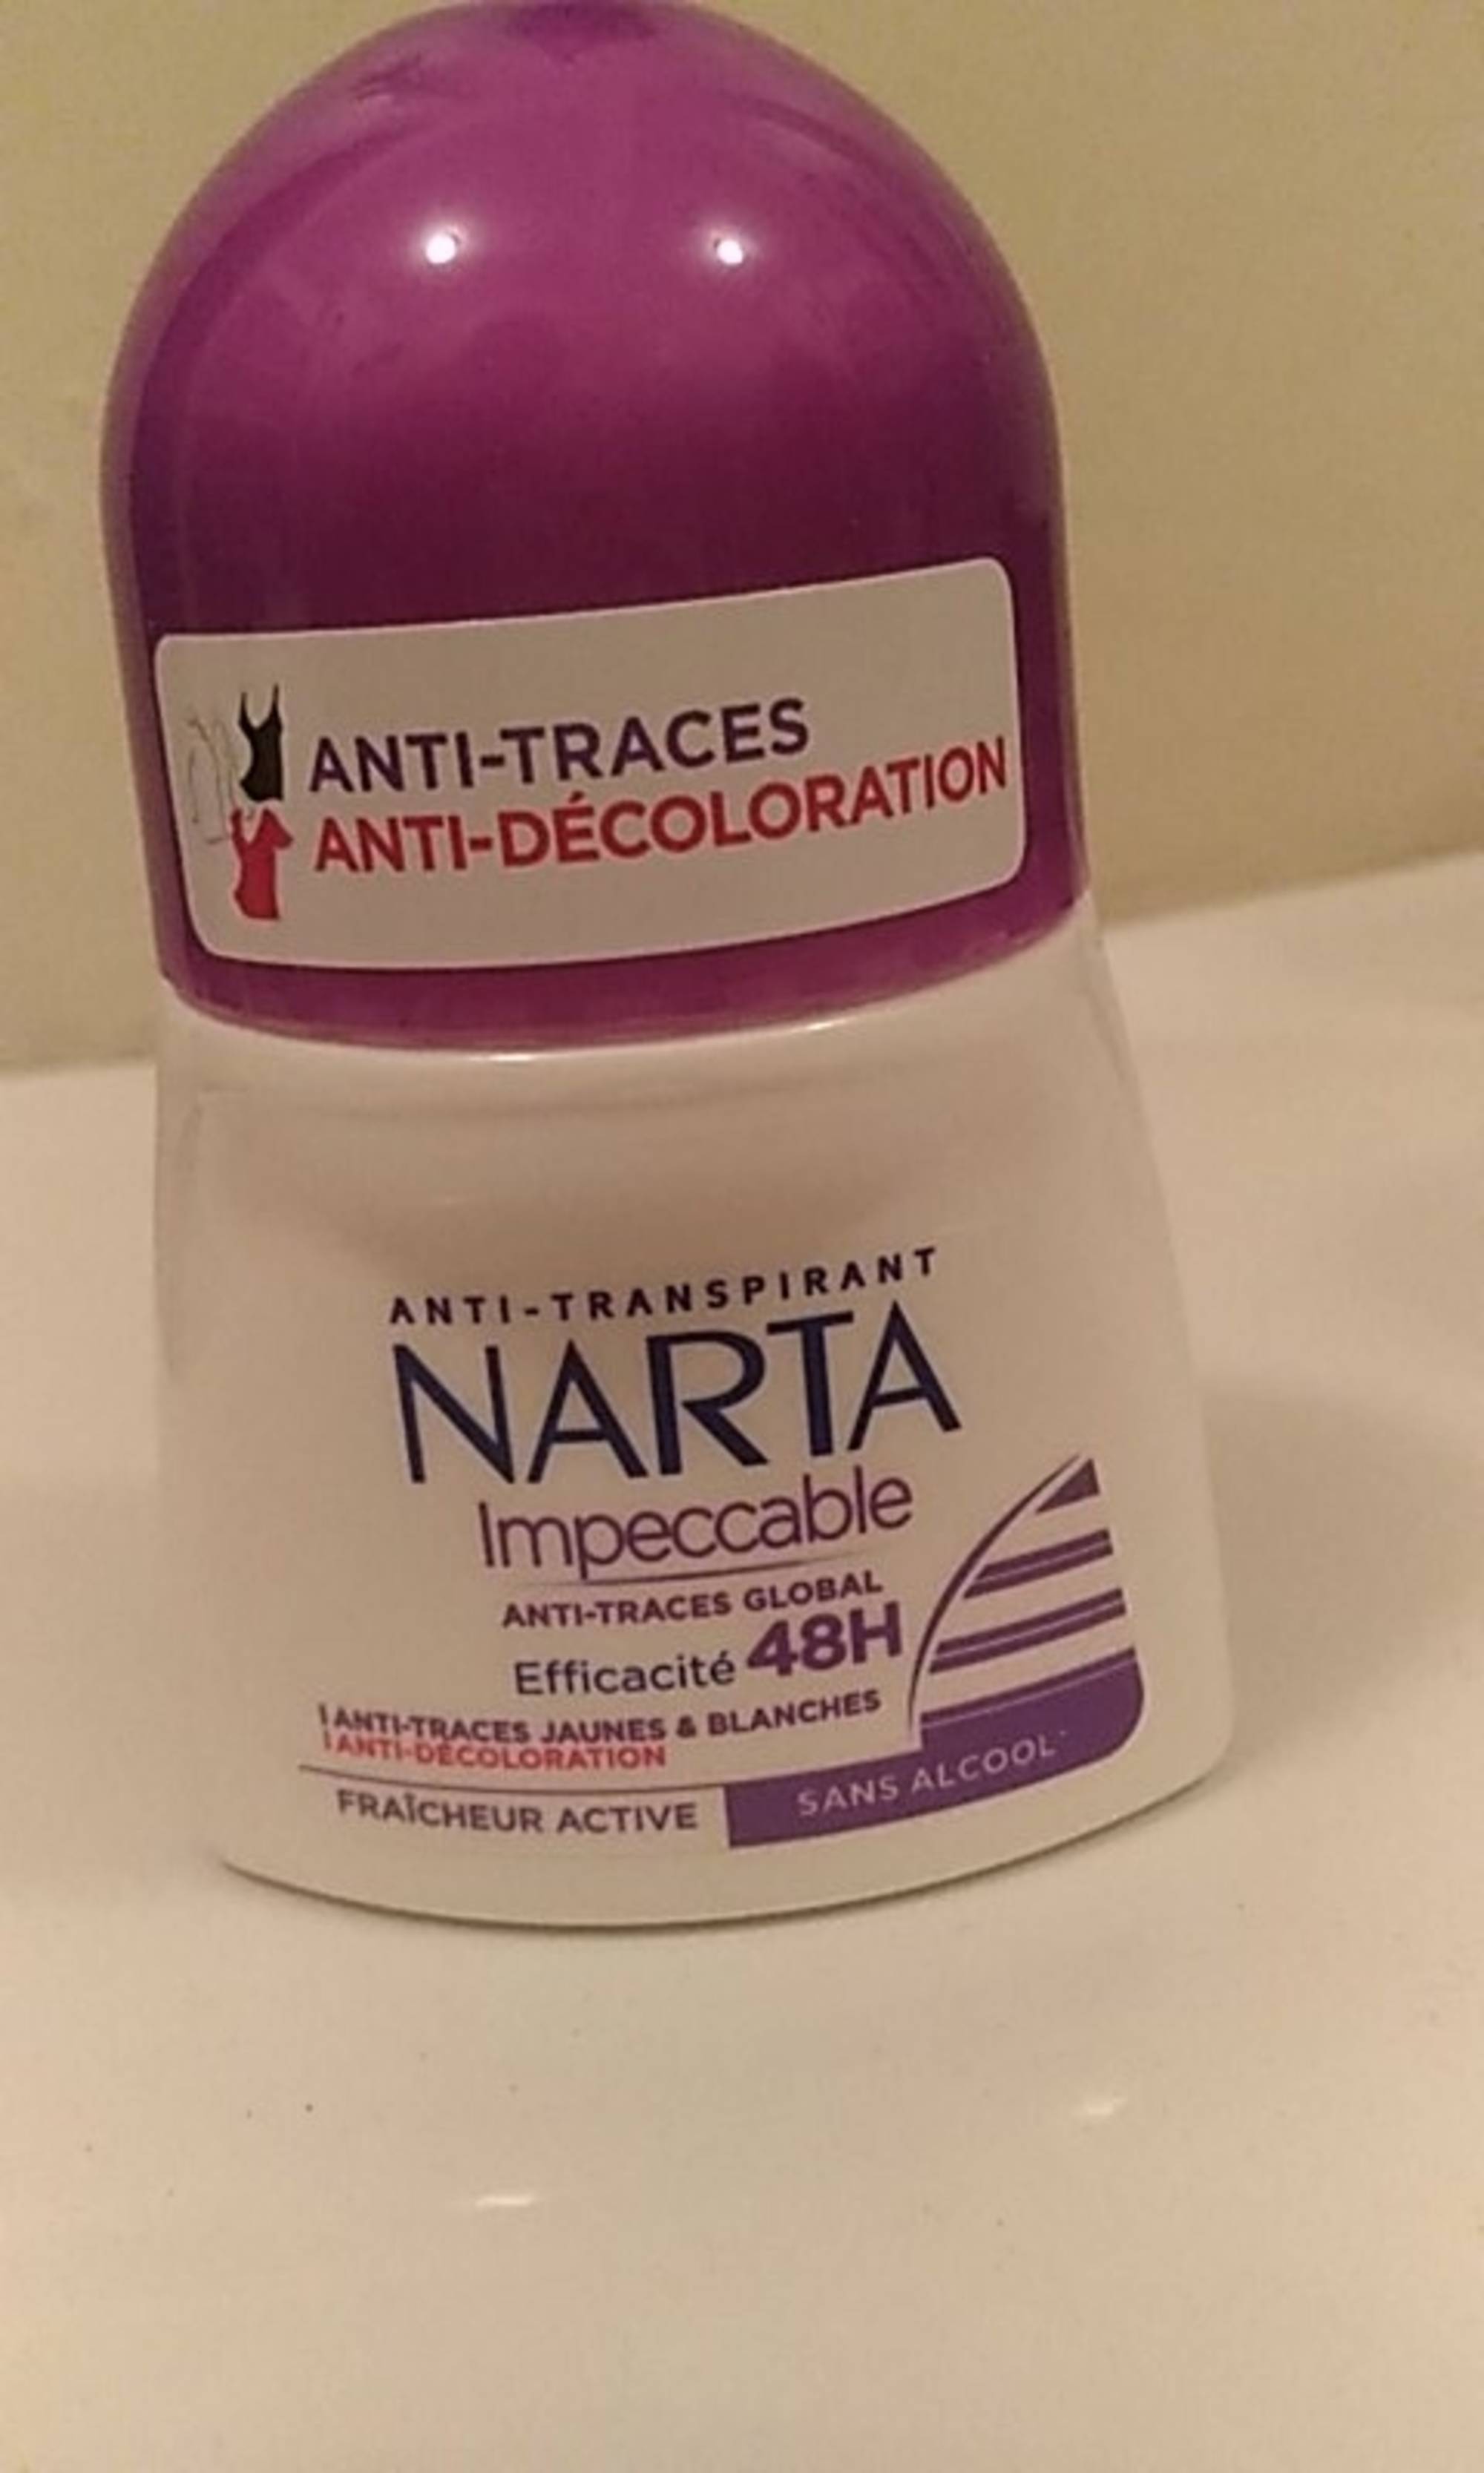 NARTA - Impeccable - Anti-transpirant 48h